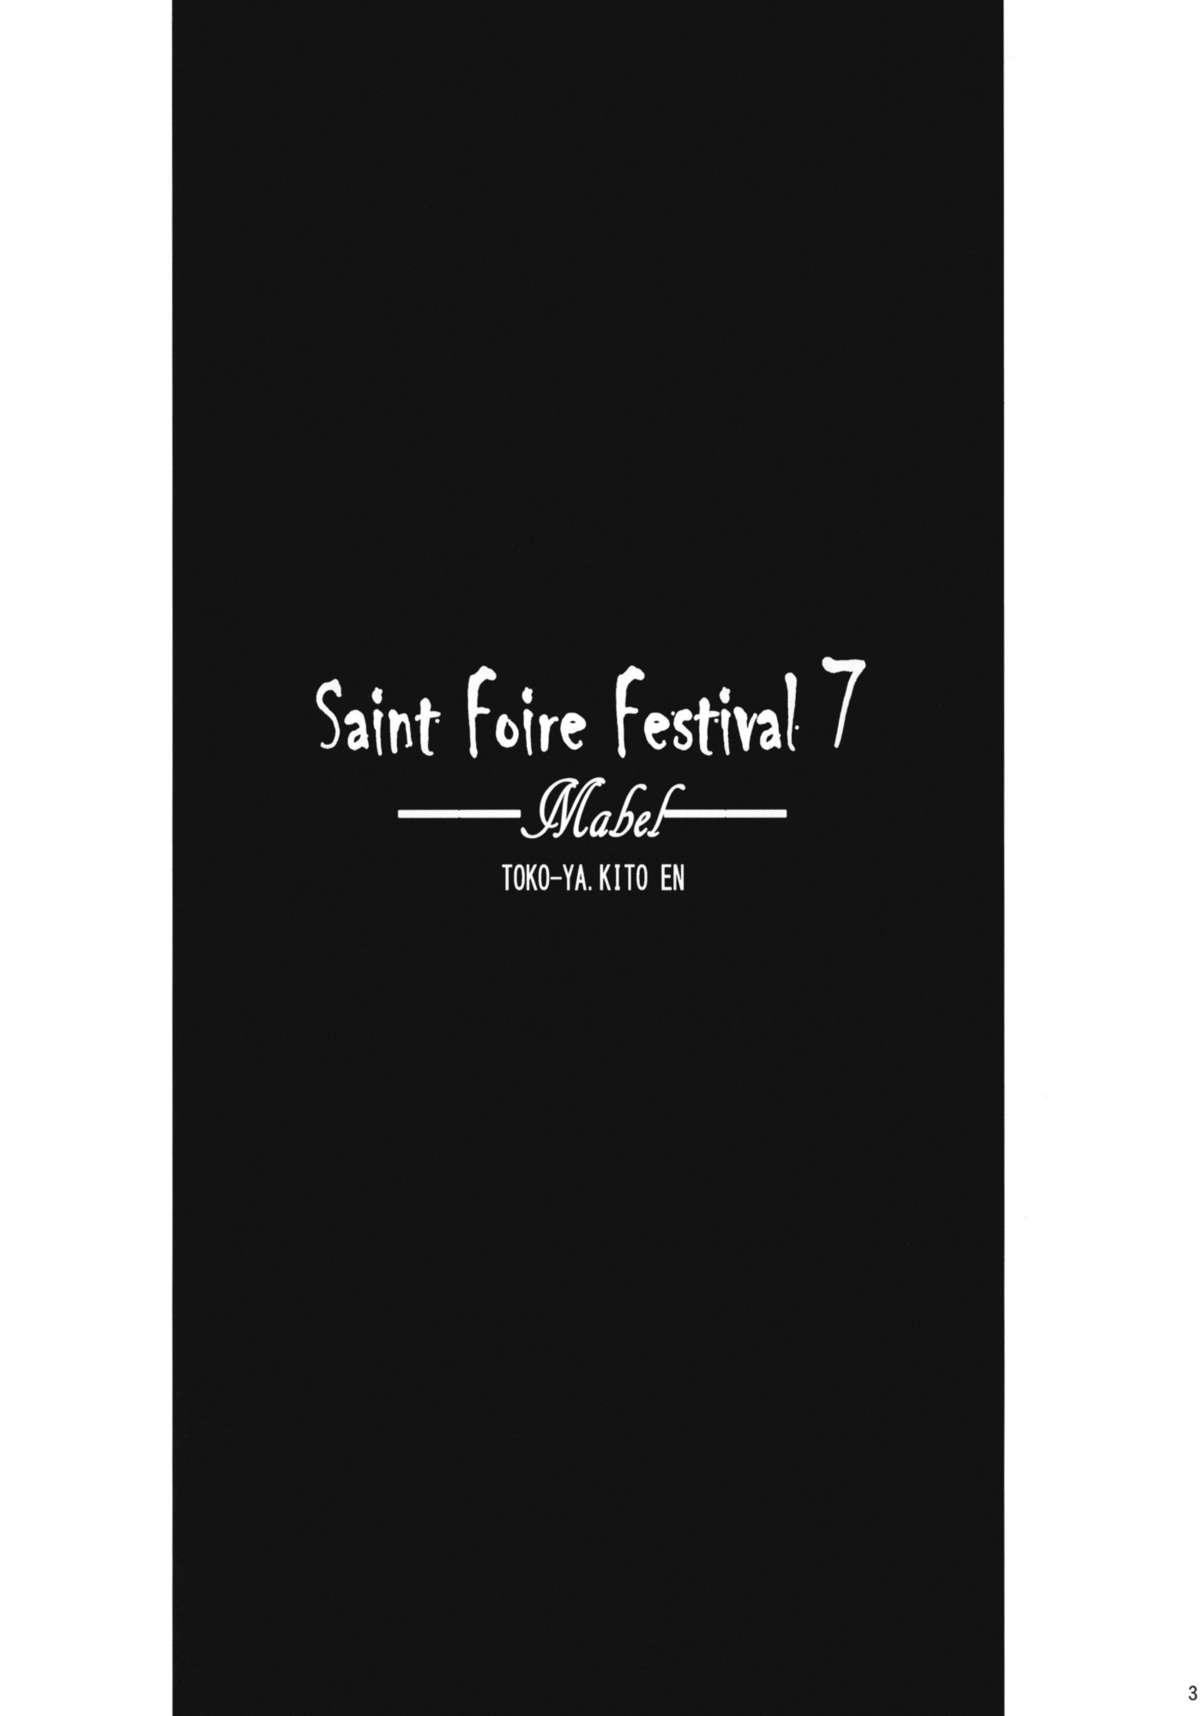 Saint Foire Festival 7 Mabel 1